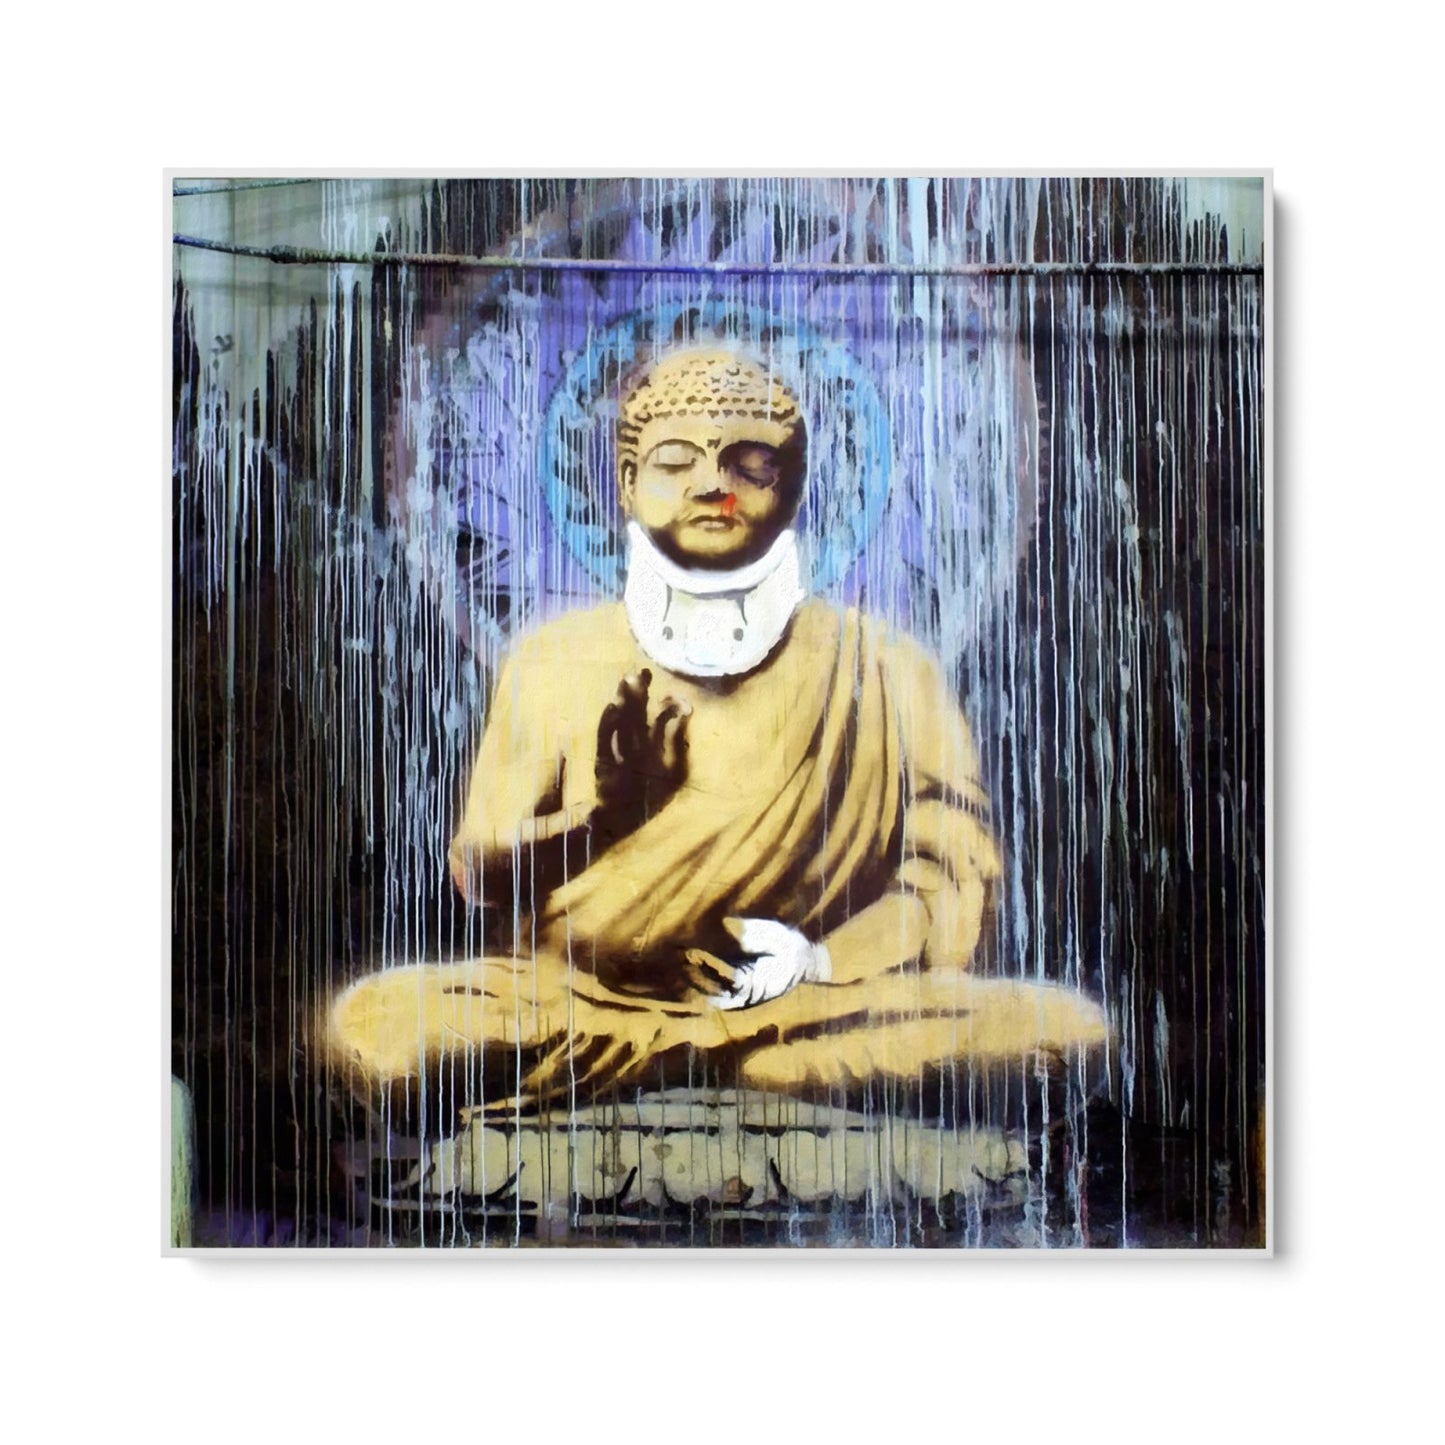 Loukkaantunut Buddha, Banksy